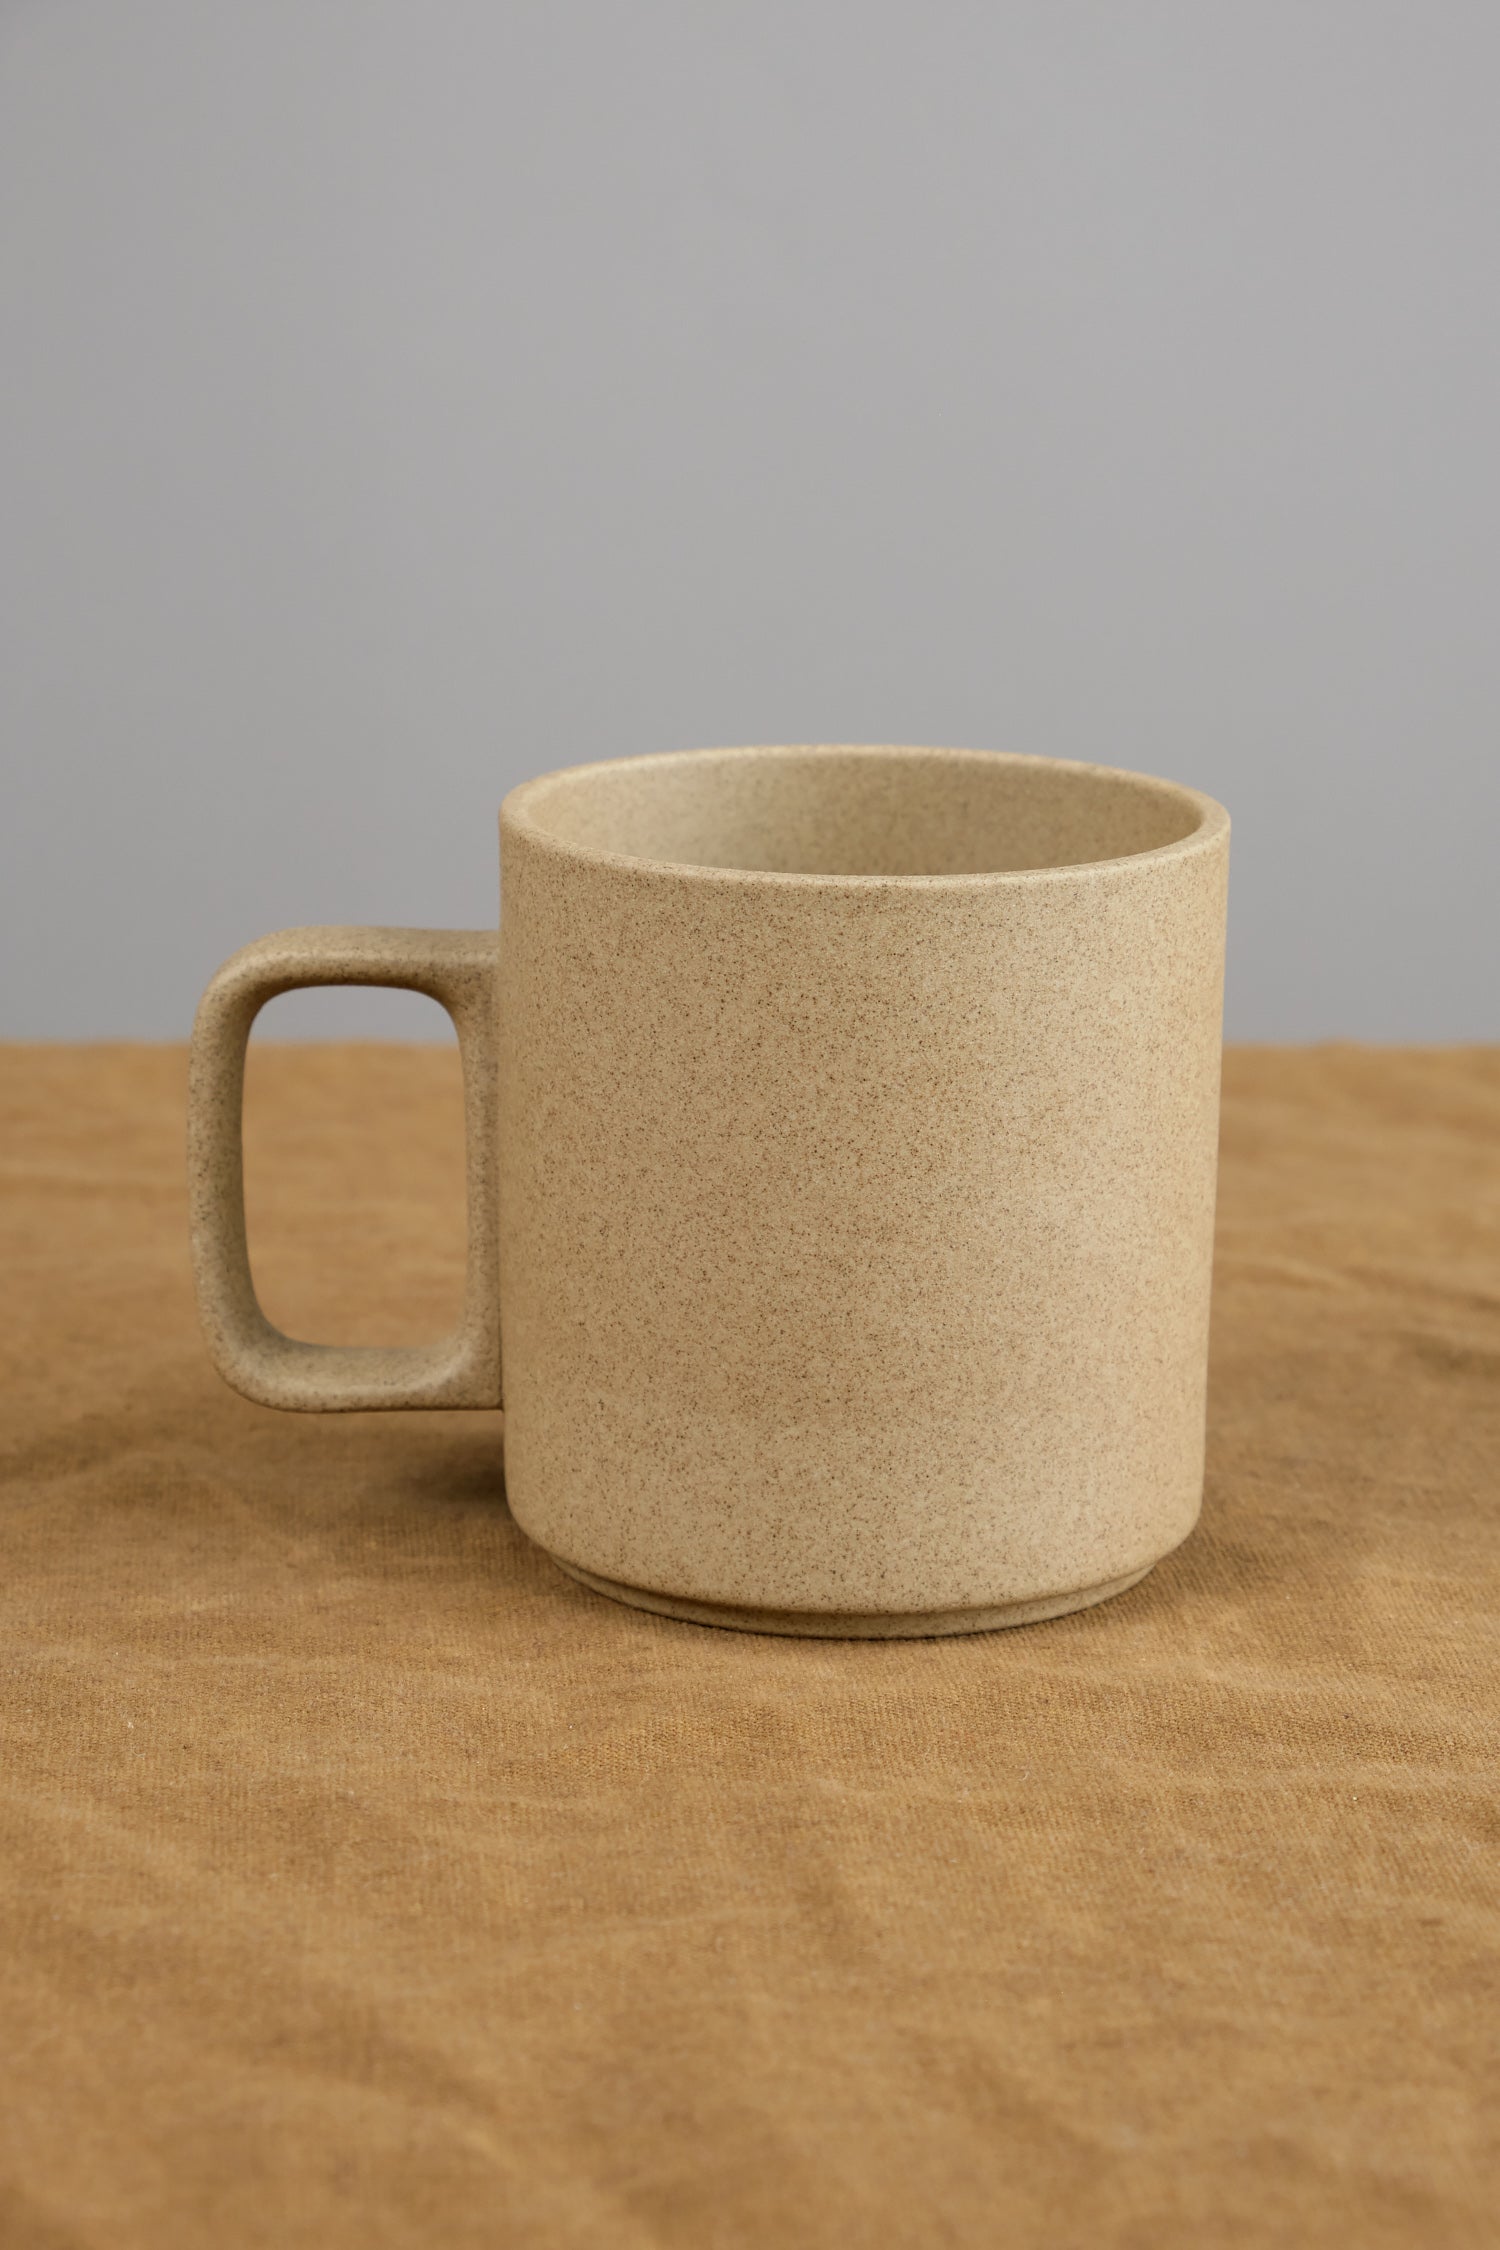 Hasami Porcelain - Mug, Black, 13 oz